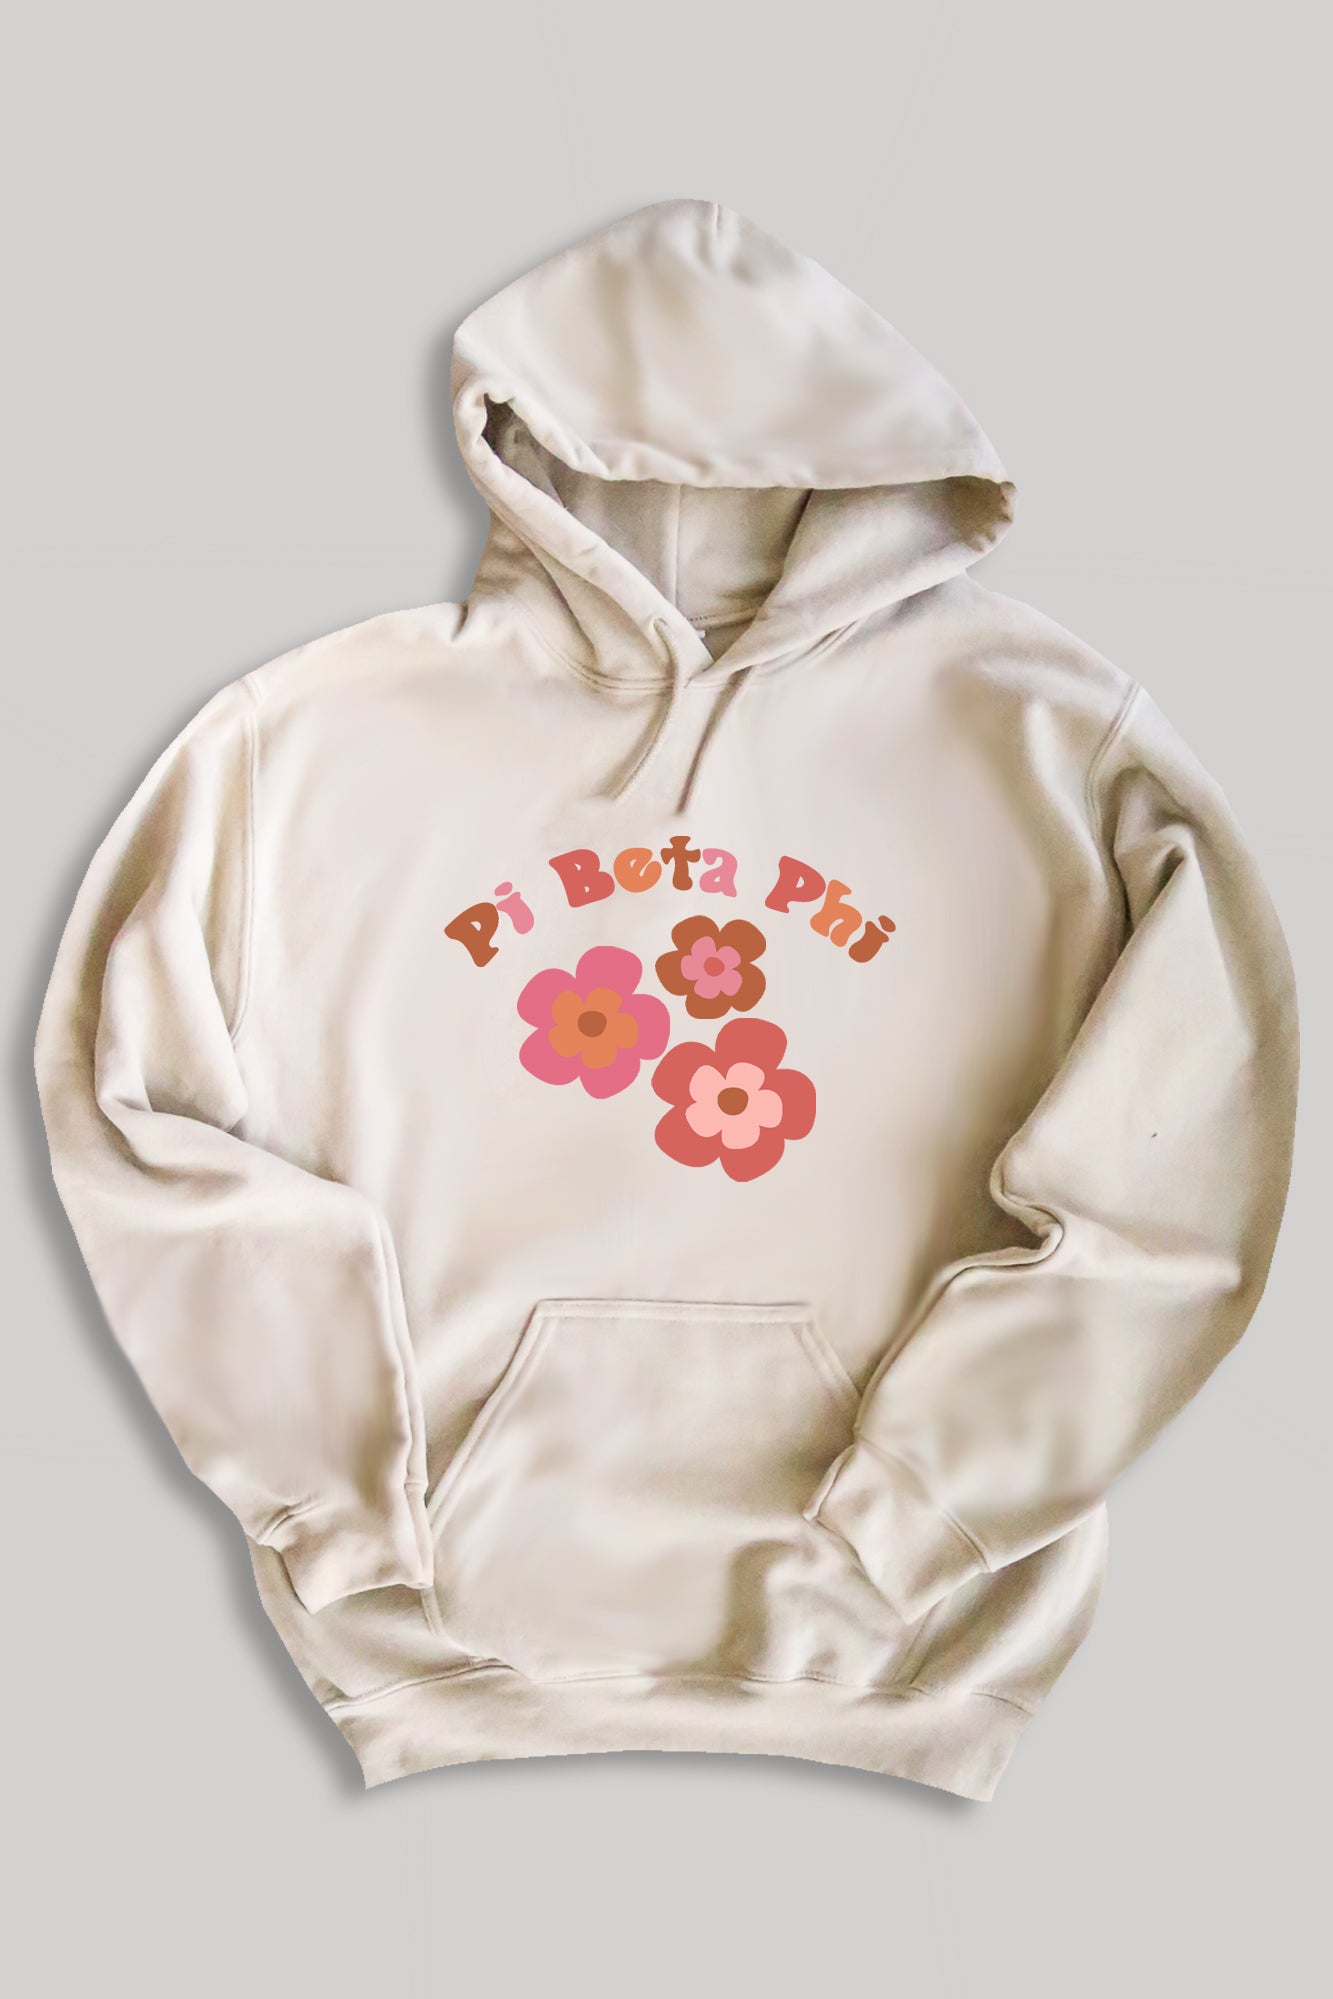 Groovy hoodie - Pi Beta Phi